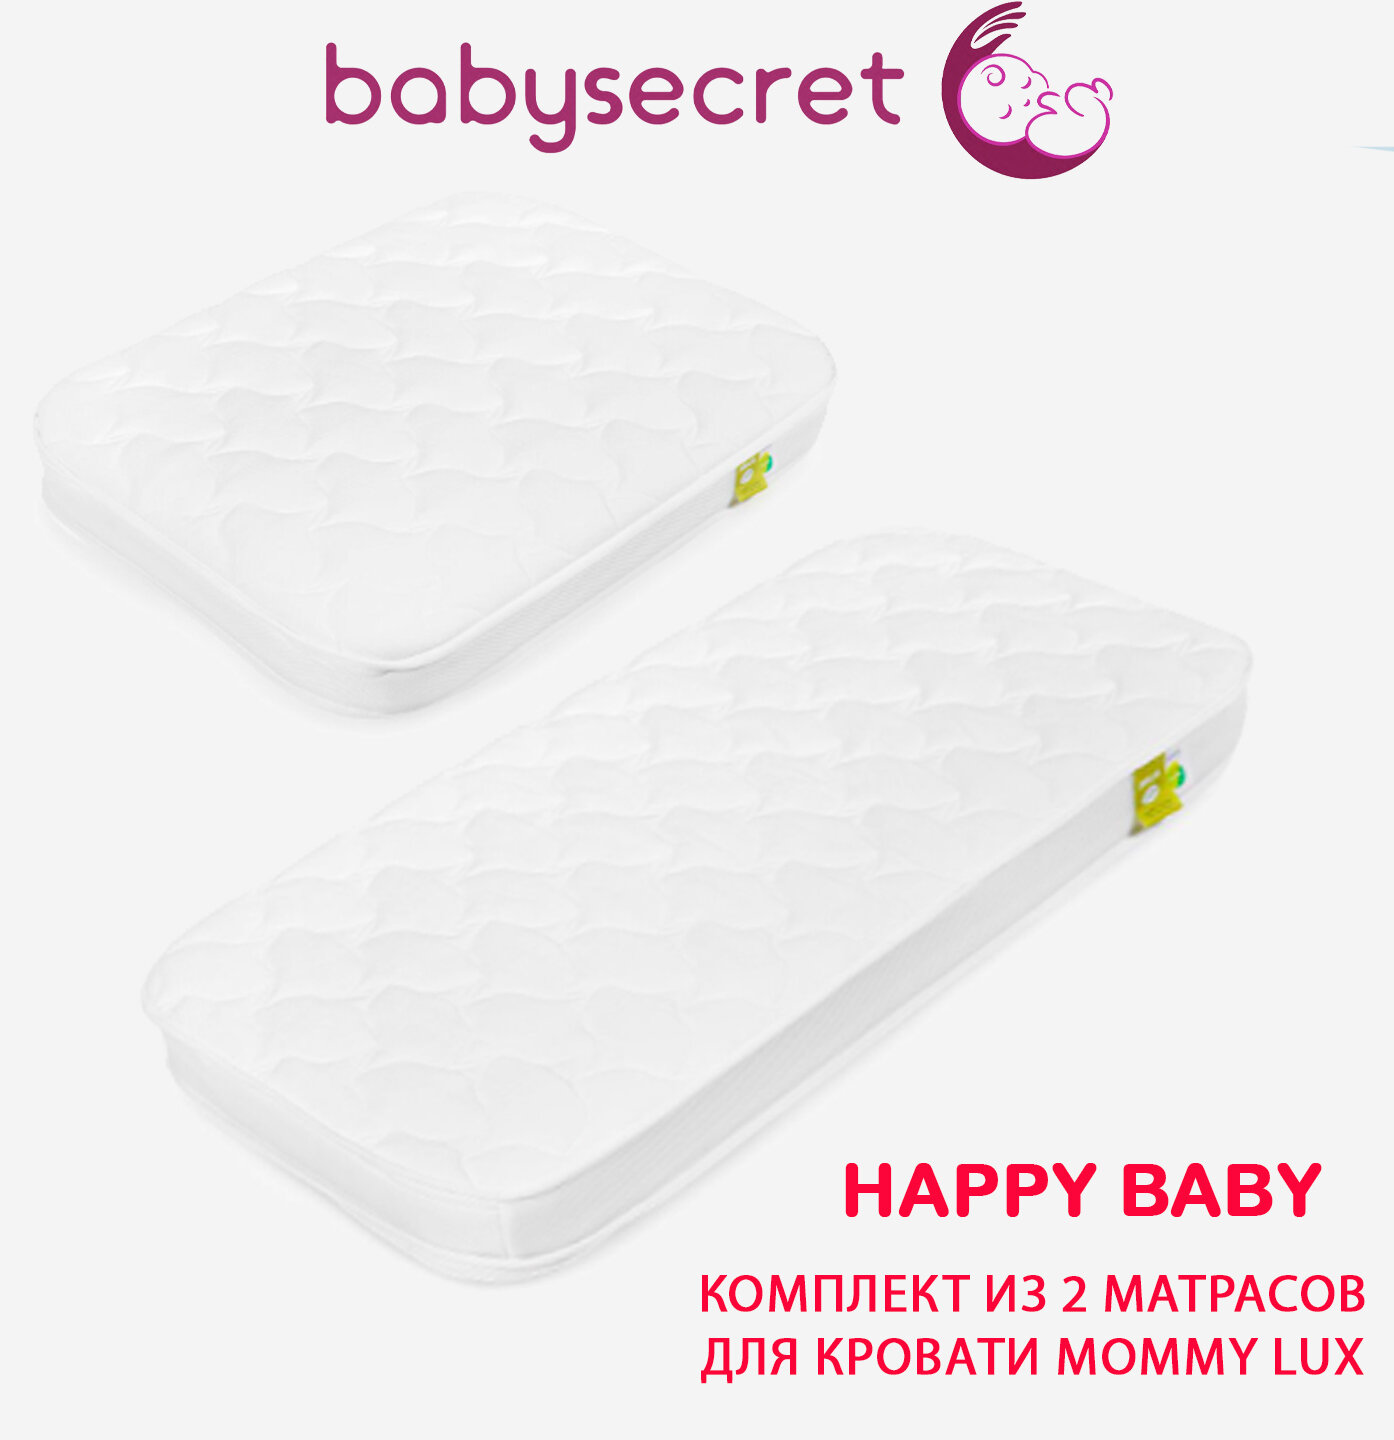 Комплект из 2 матросов для люльки-кроватки MOMMY LUX Happy Baby